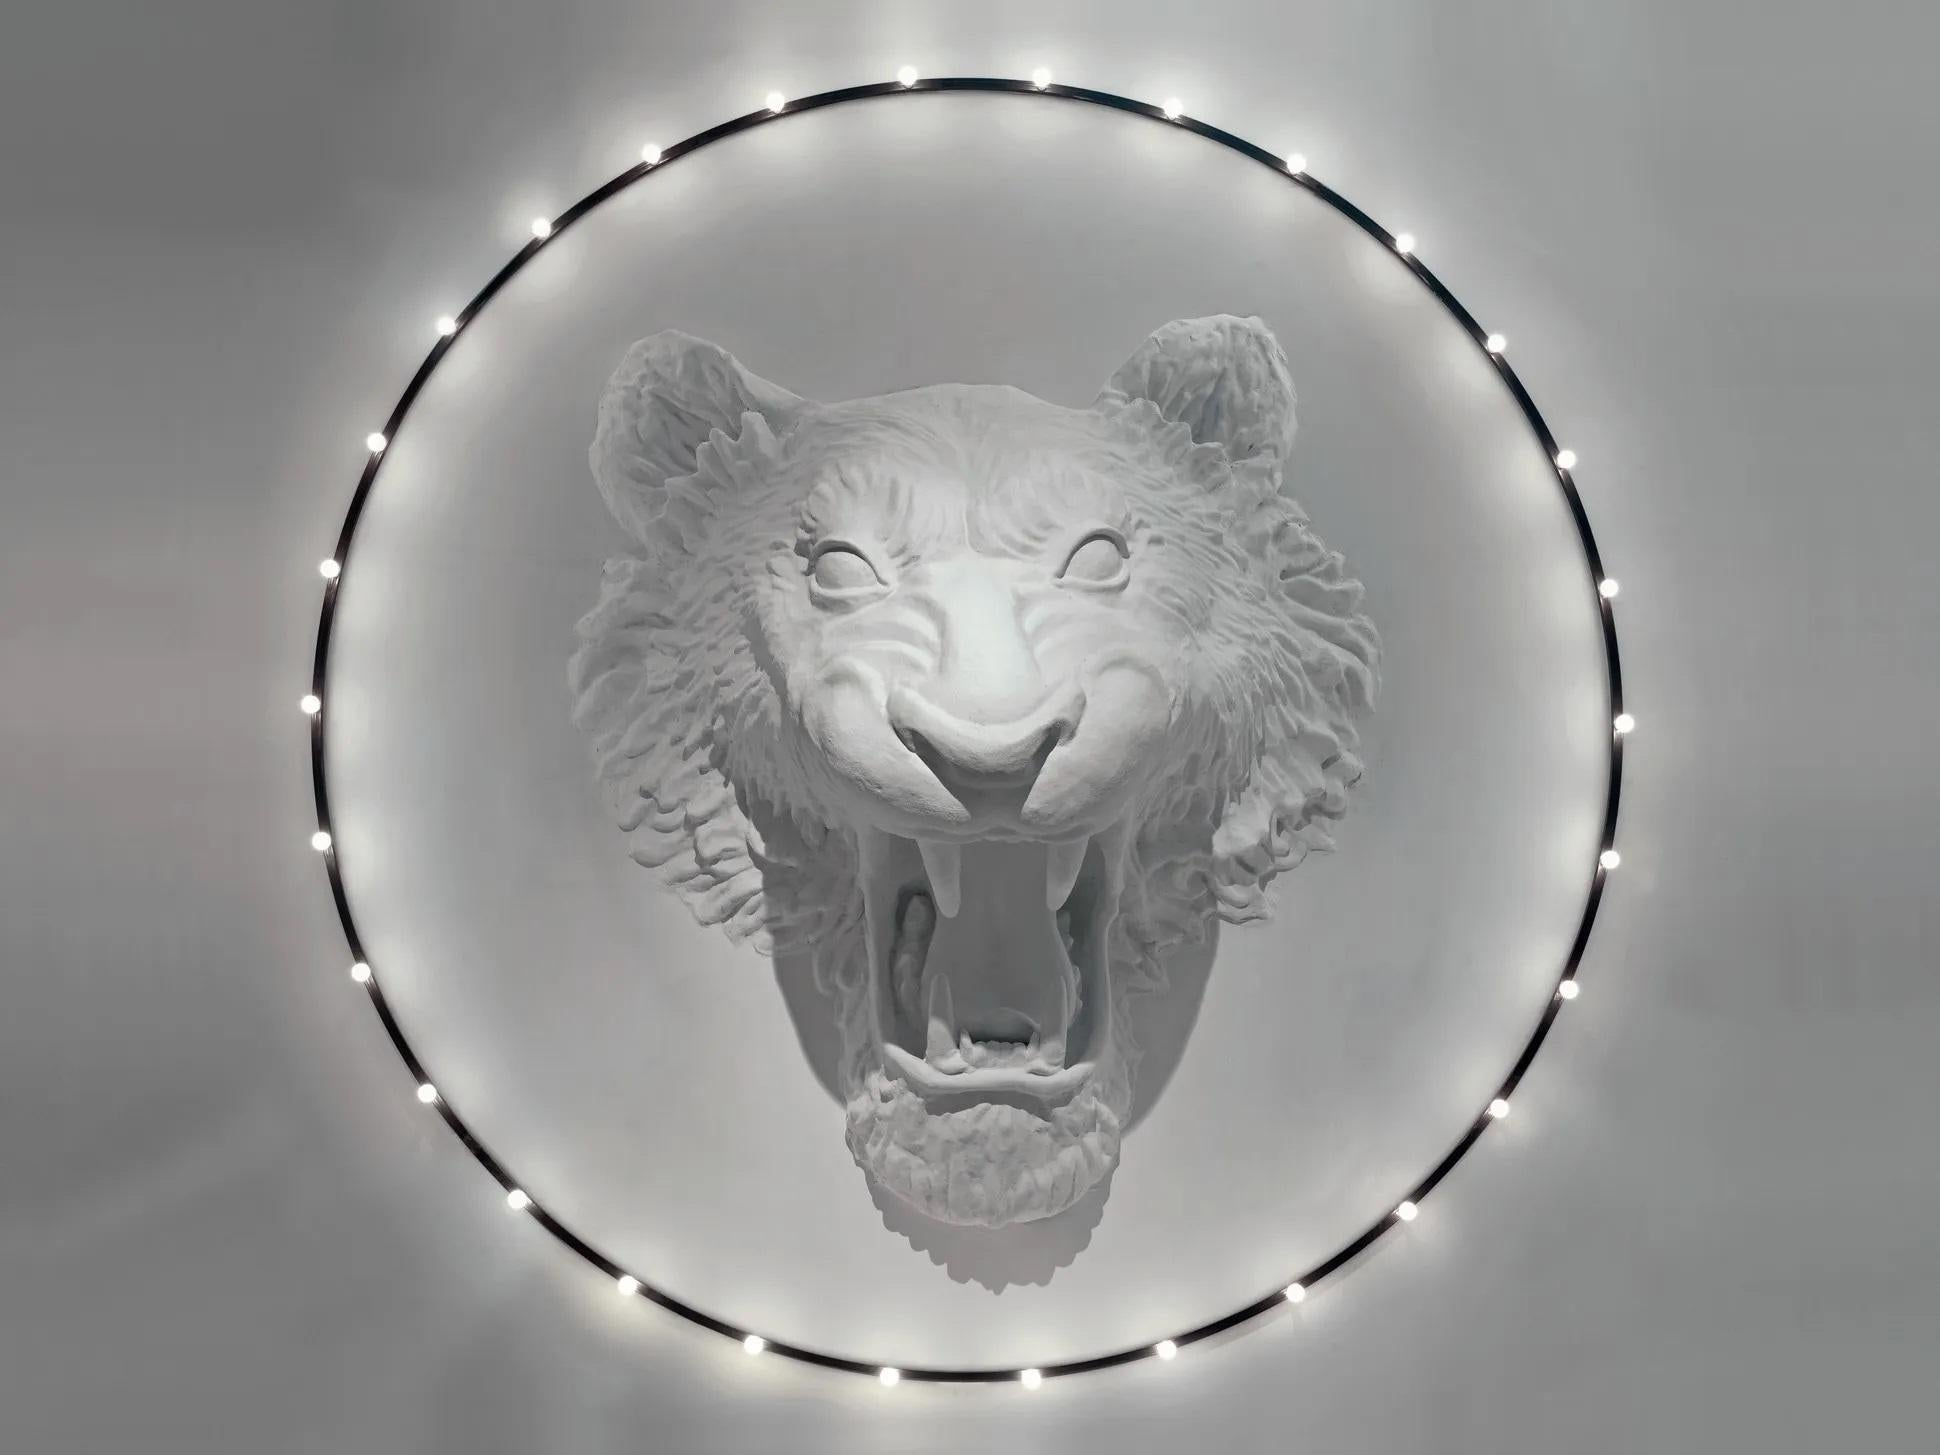 Applique Circus par Imperfettolab
2012
Designer : Verter Turroni
Dimensions : D 400 X H 130 cm
Matériaux : Fibre de verre

Une installation d'un grand impact et de grandes dimensions. Inspirée d'un cirque imaginatif, dans lequel un lion